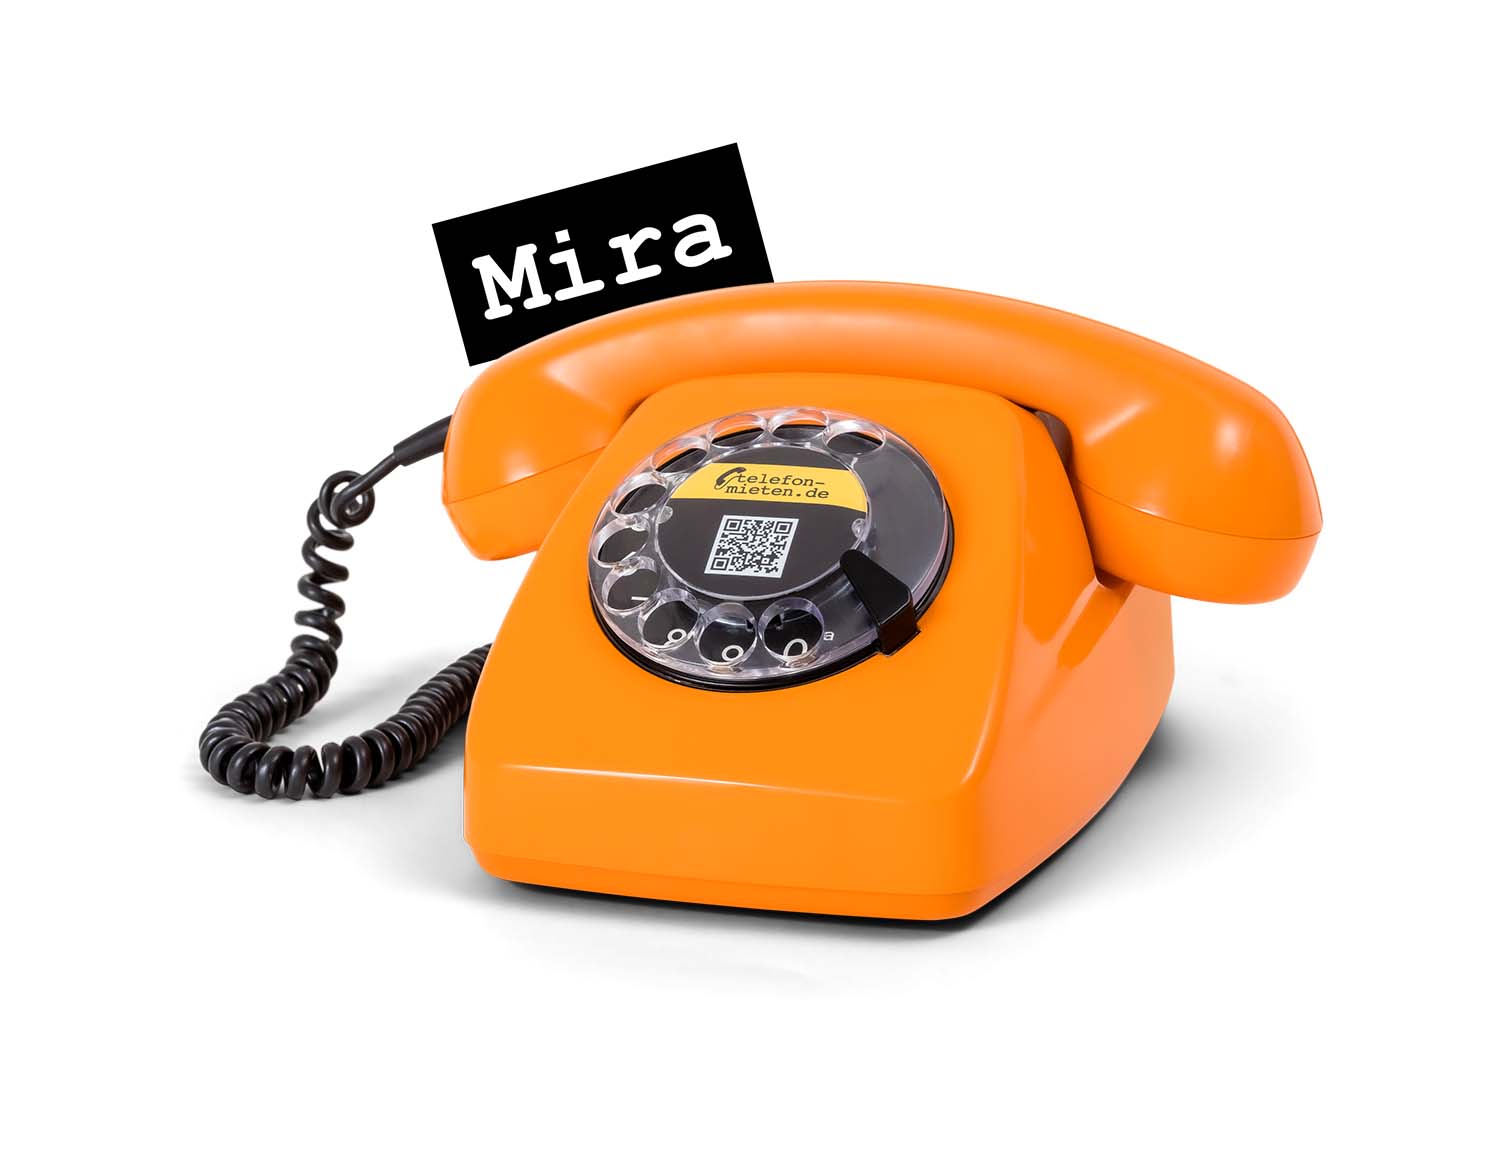 Das Audio Gästebuch Mira von telefon-mieten.de